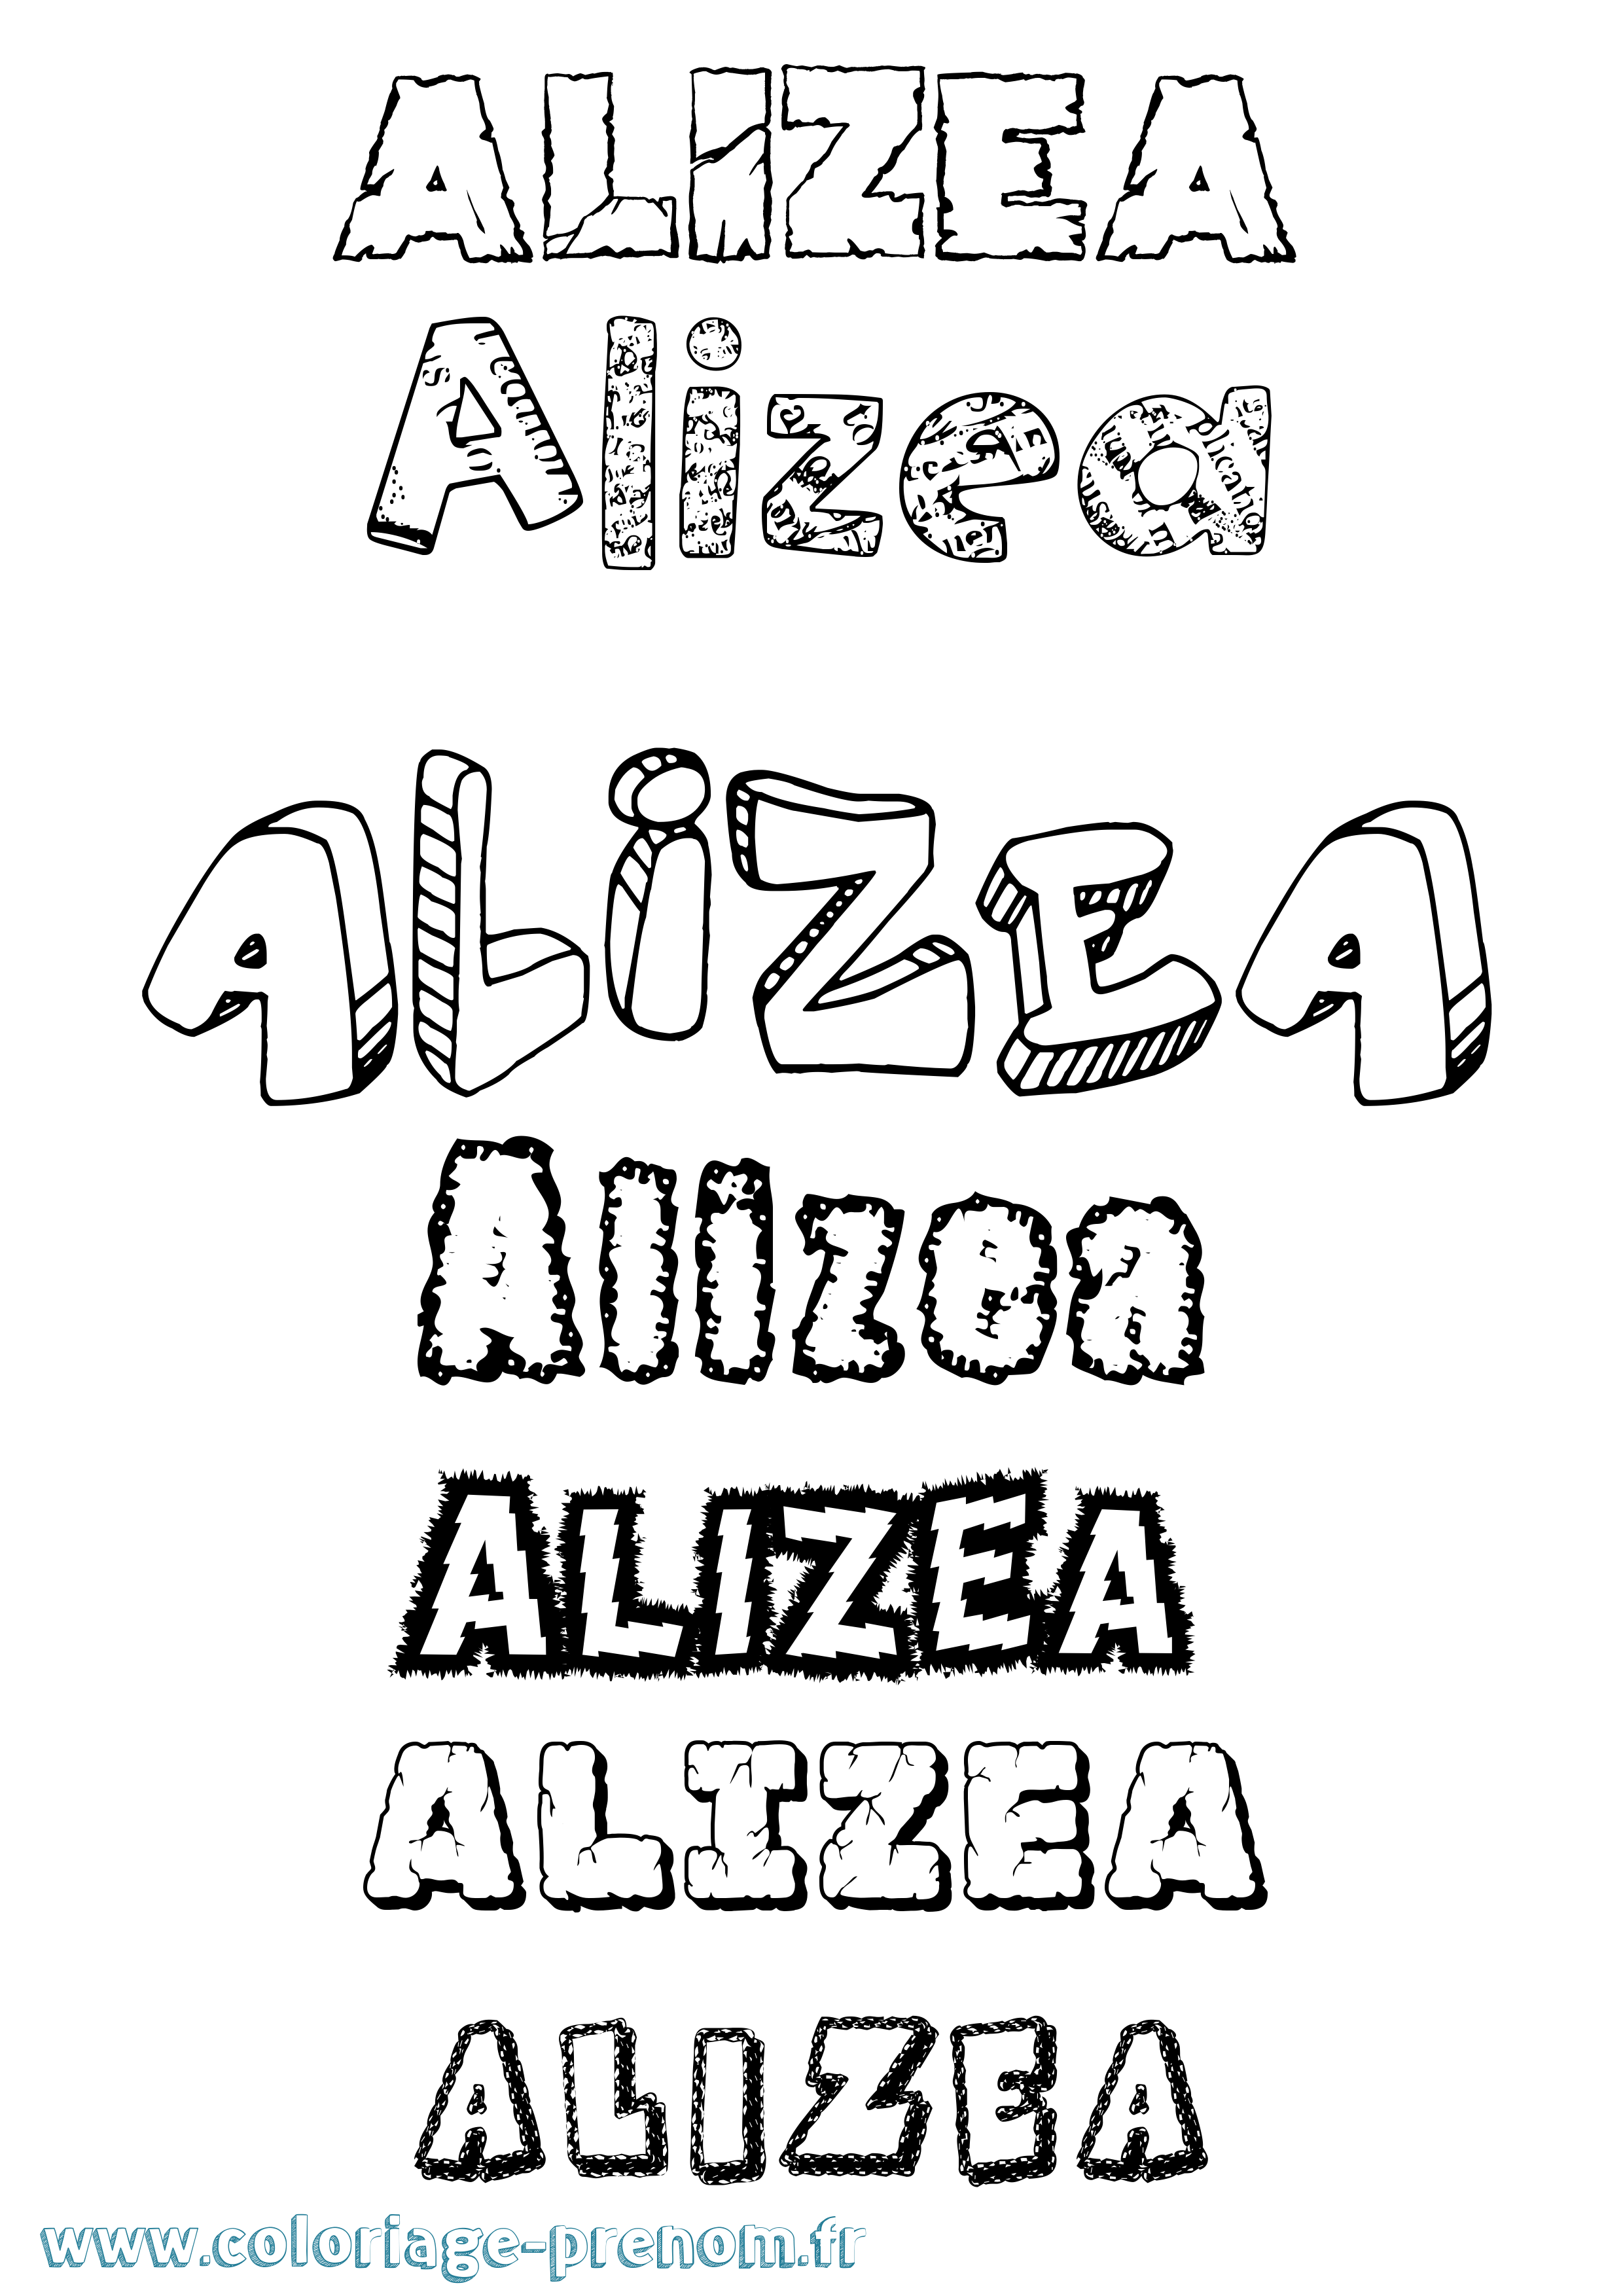 Coloriage prénom Alizea Destructuré